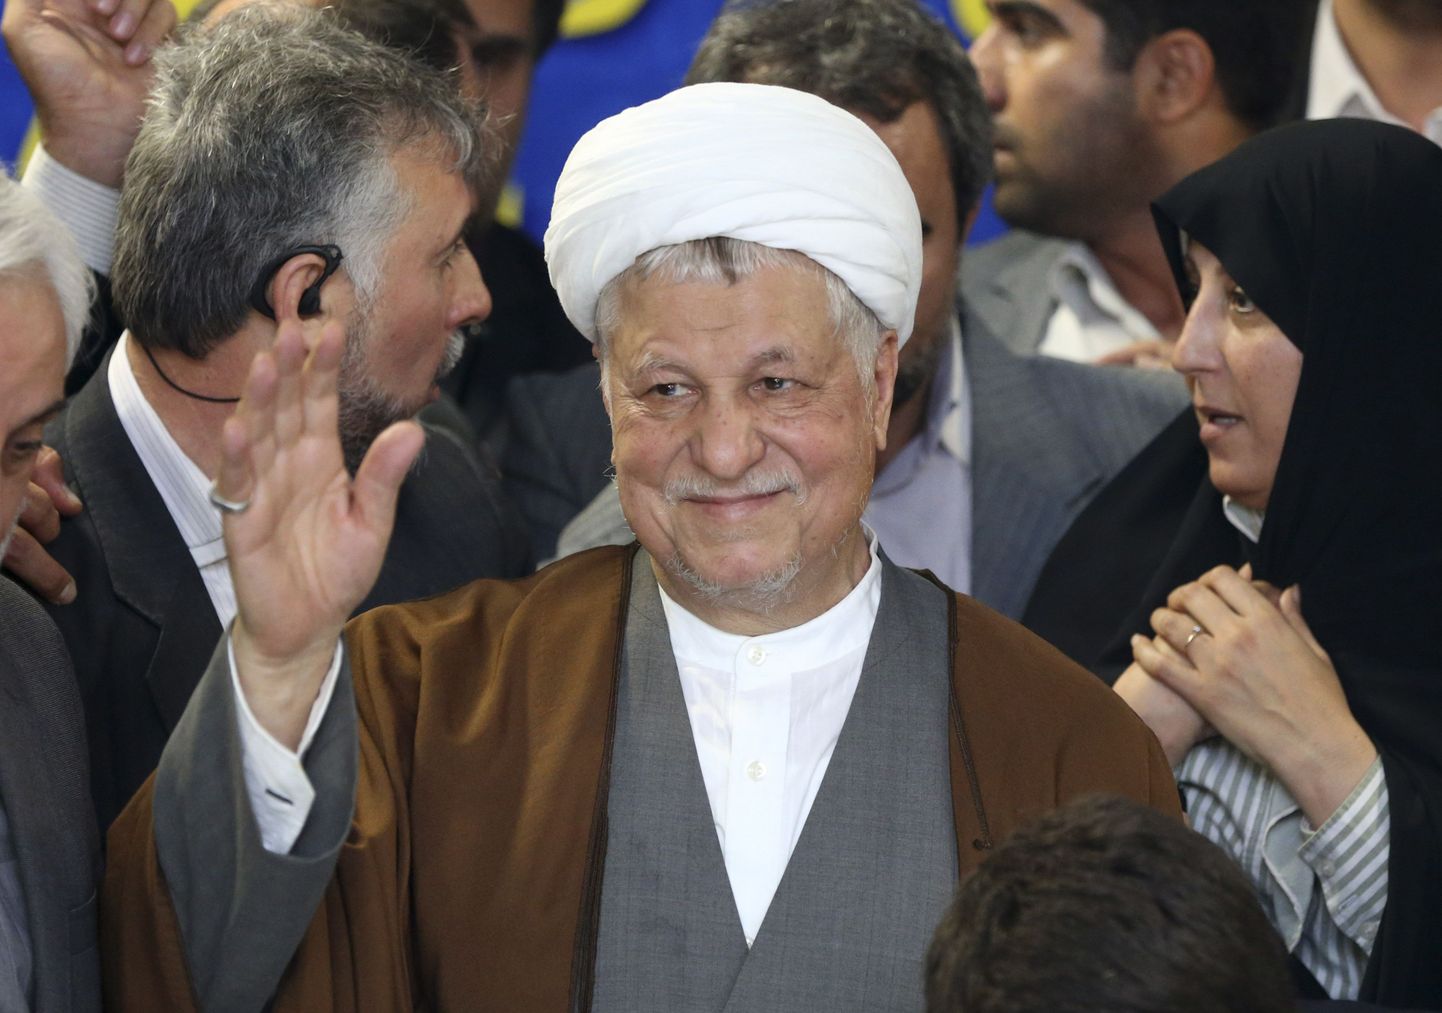 Iraani mõjuvõimsaim institutsioon - 12 islamiõiguse asjatundjast koosnev järelevalvenõukogu ei lubanud mõõdukat ekspresidenti Akbar Hashemi Rafsanjanit kandideerima 14. juunil toimuvatel presidendivalimistel.